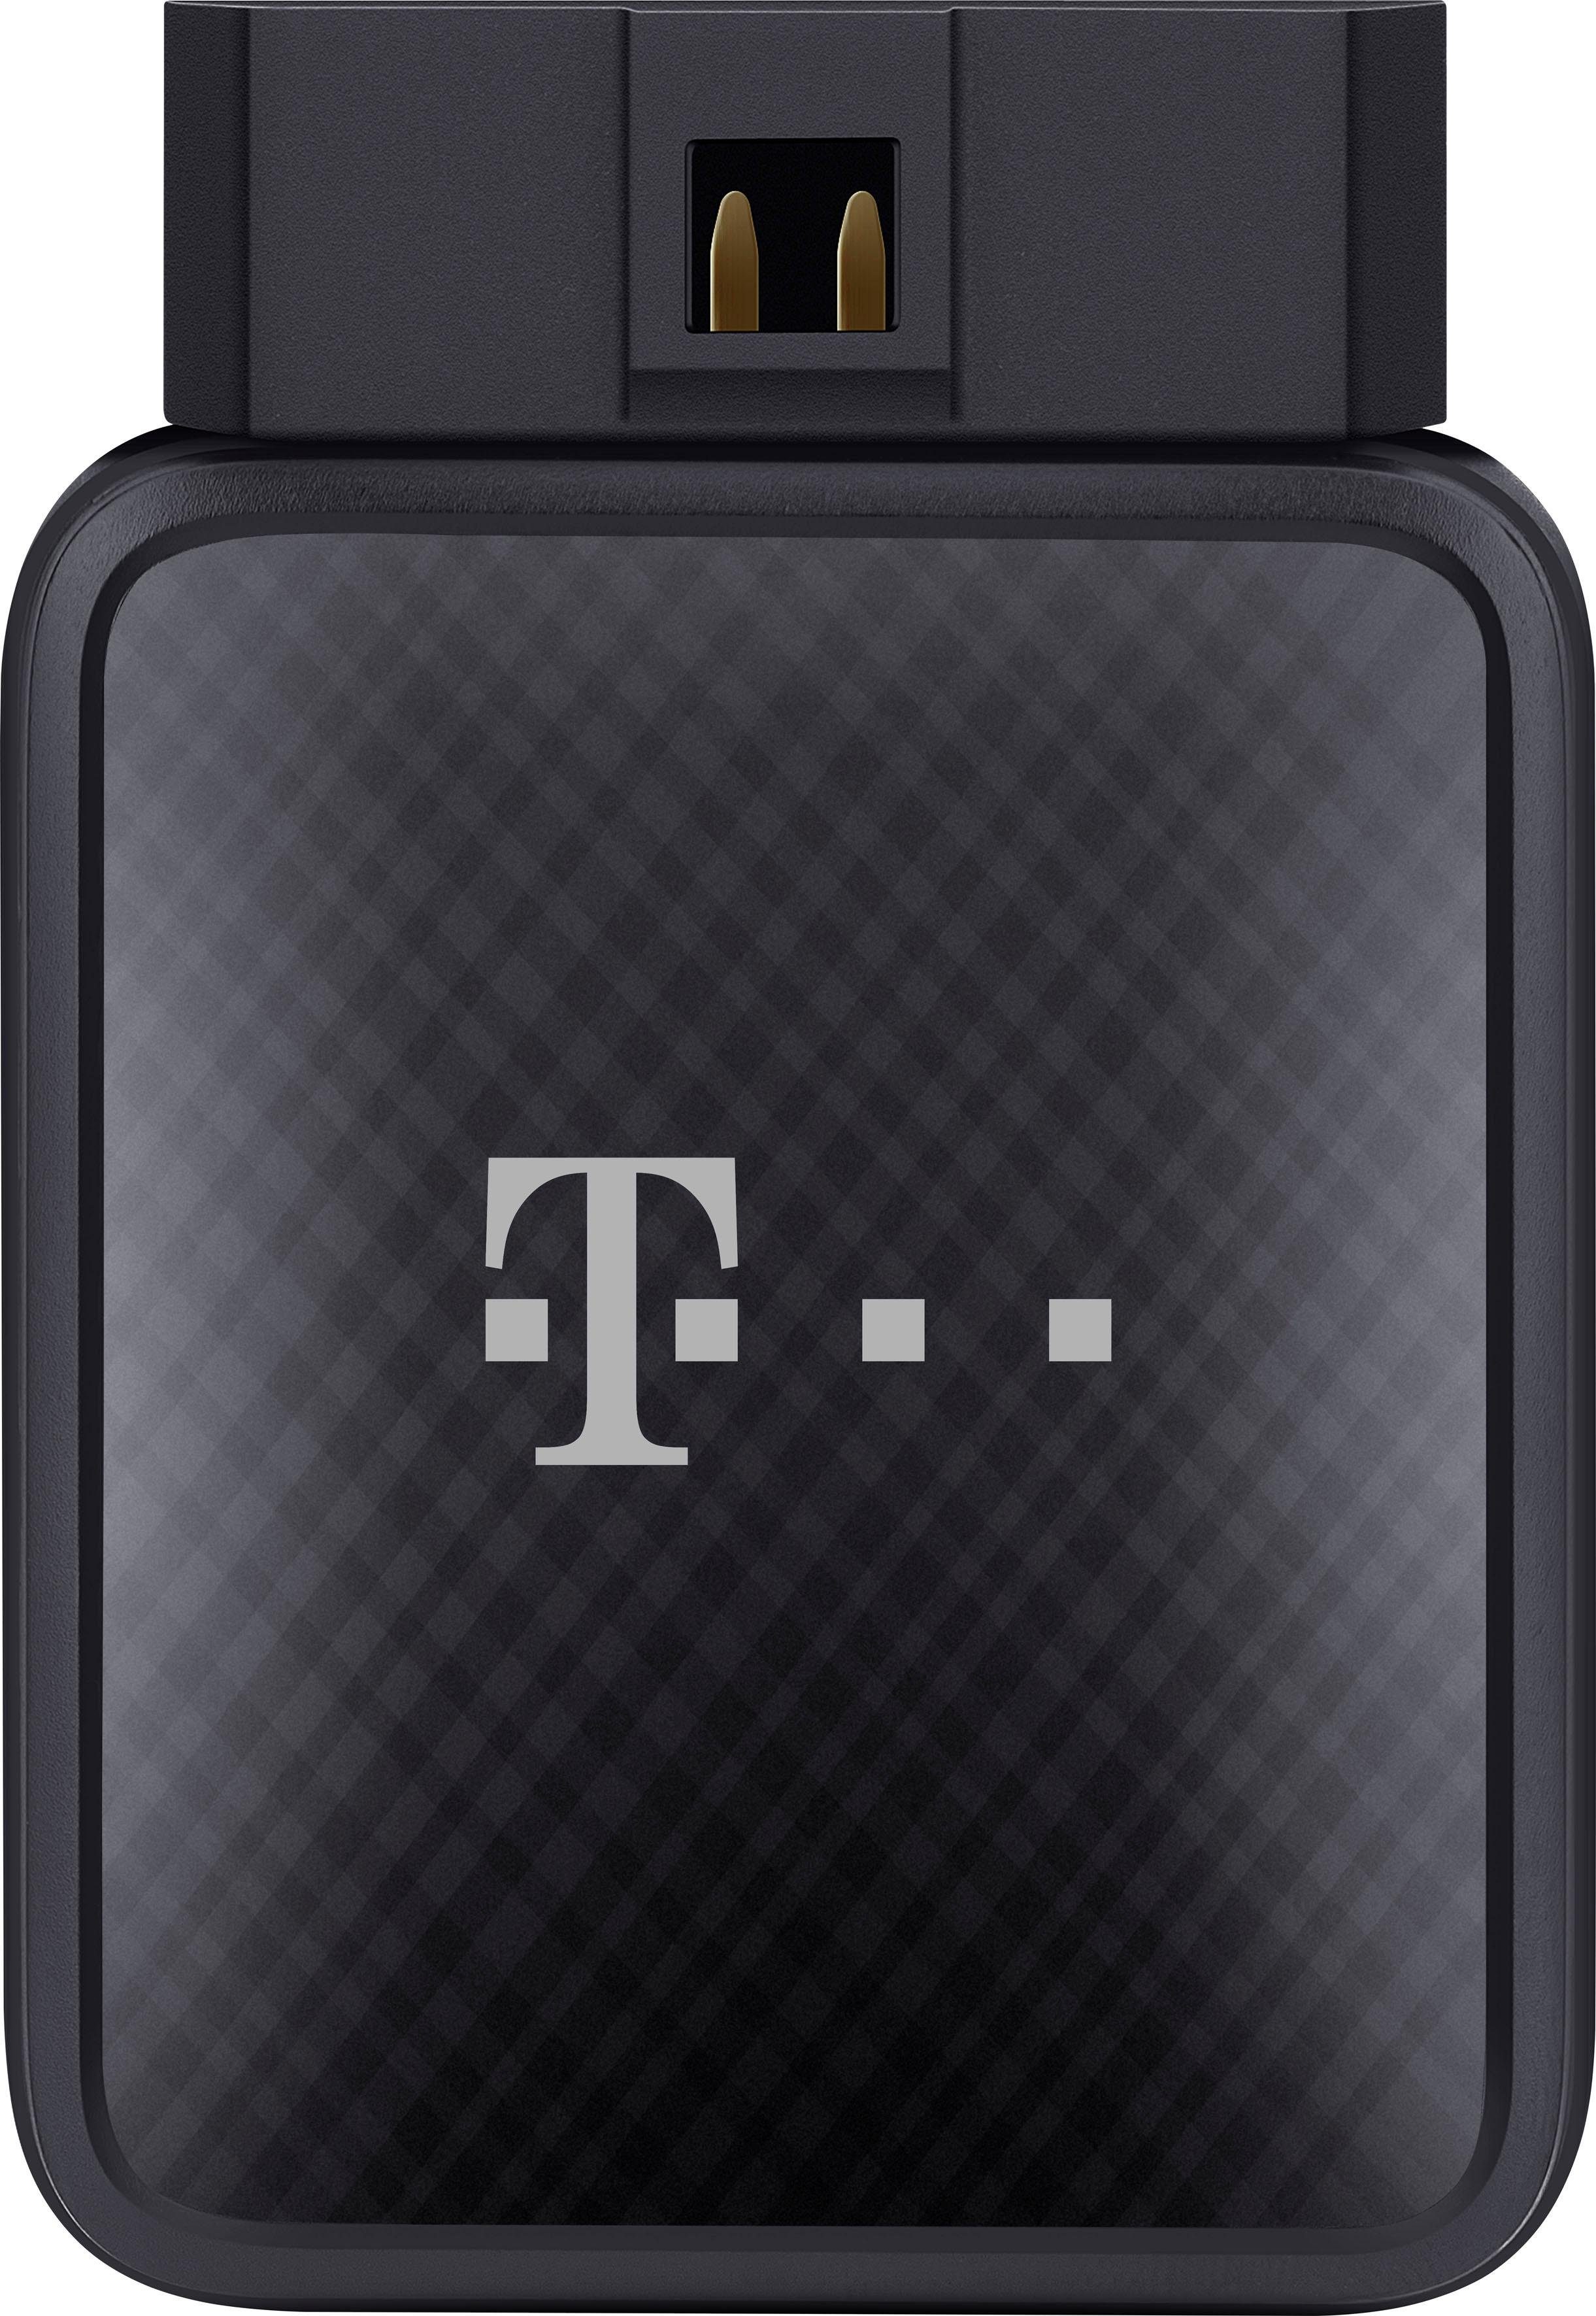 Image of Telekom GPS-Empfänger »CarConnect Adapter 3230 +SIM Prepaid XSB31« bei Ackermann Versand Schweiz